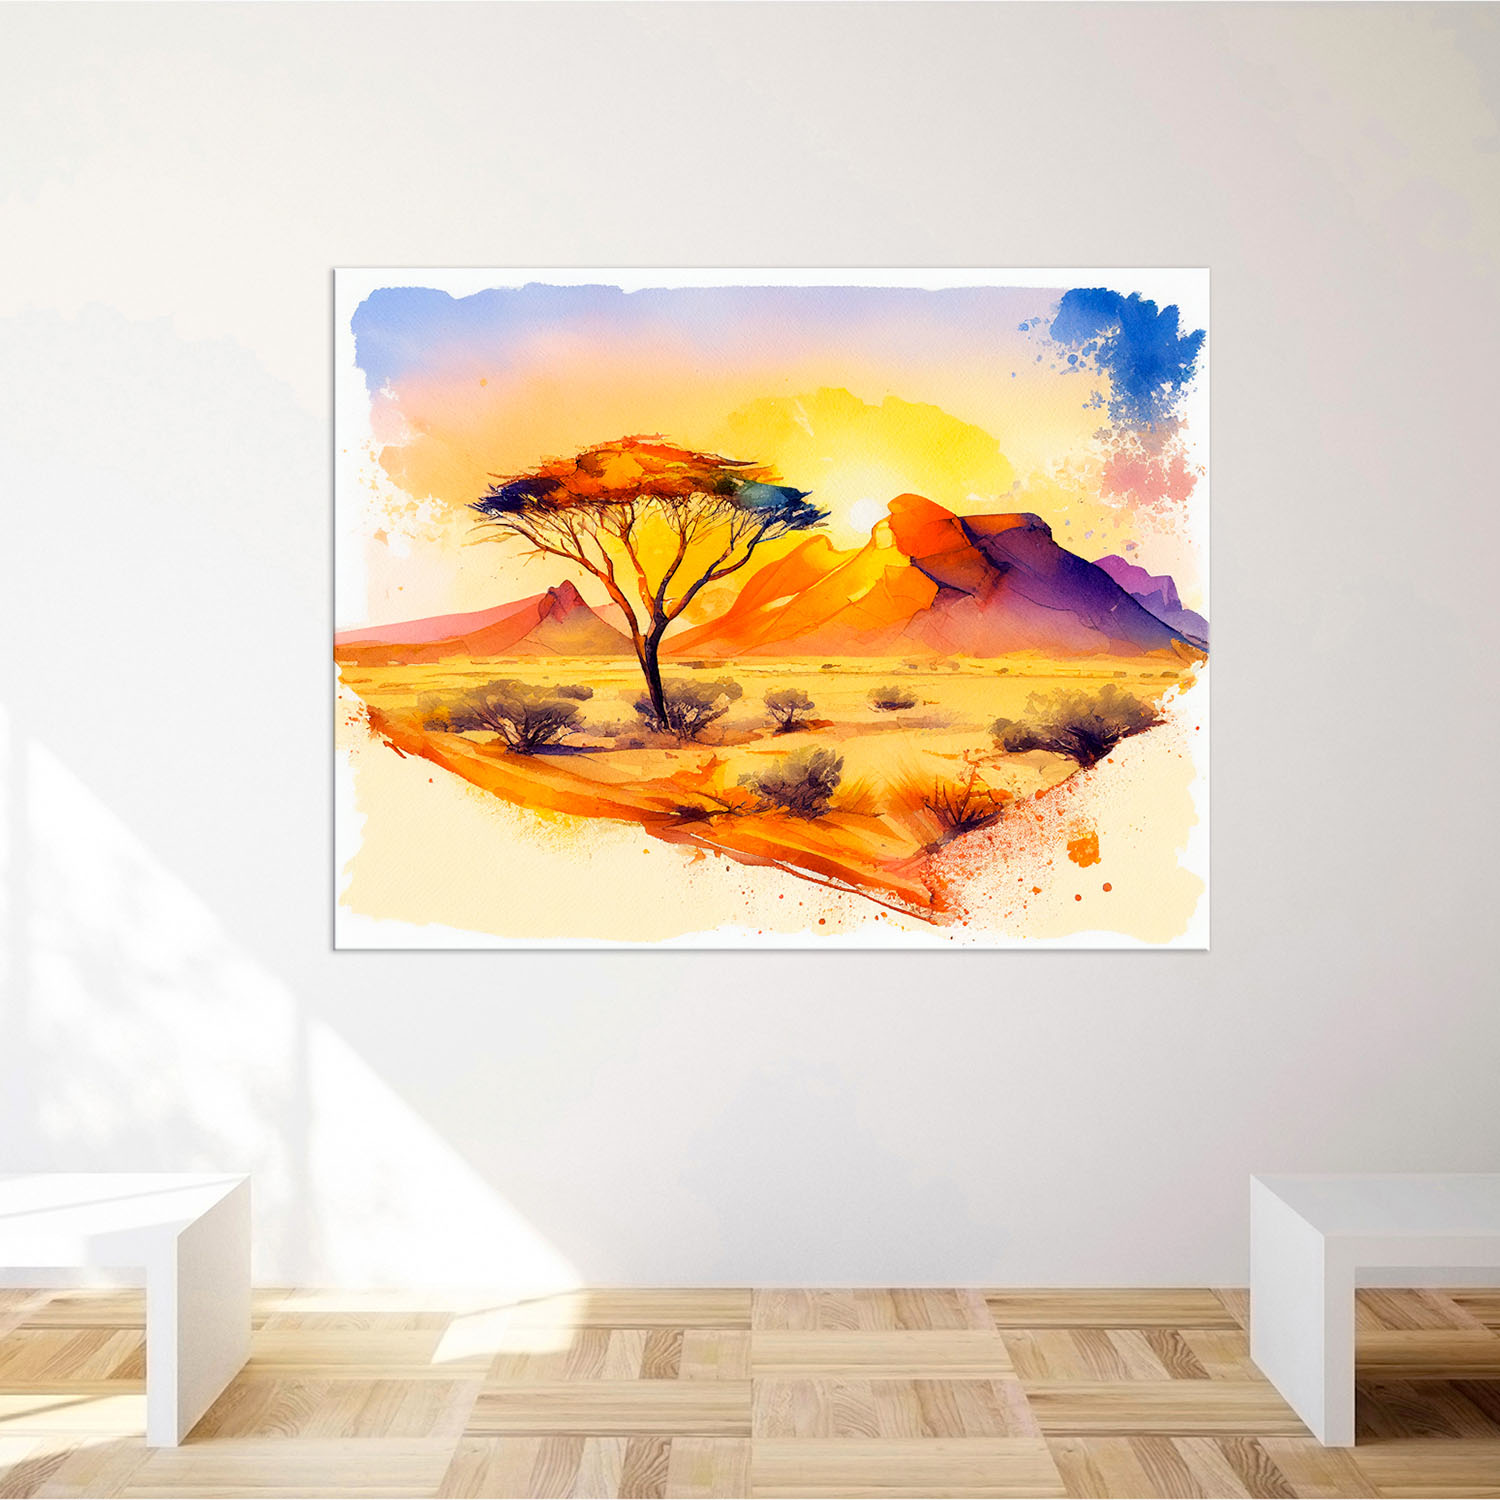 Le tableau mural Desert Landscape